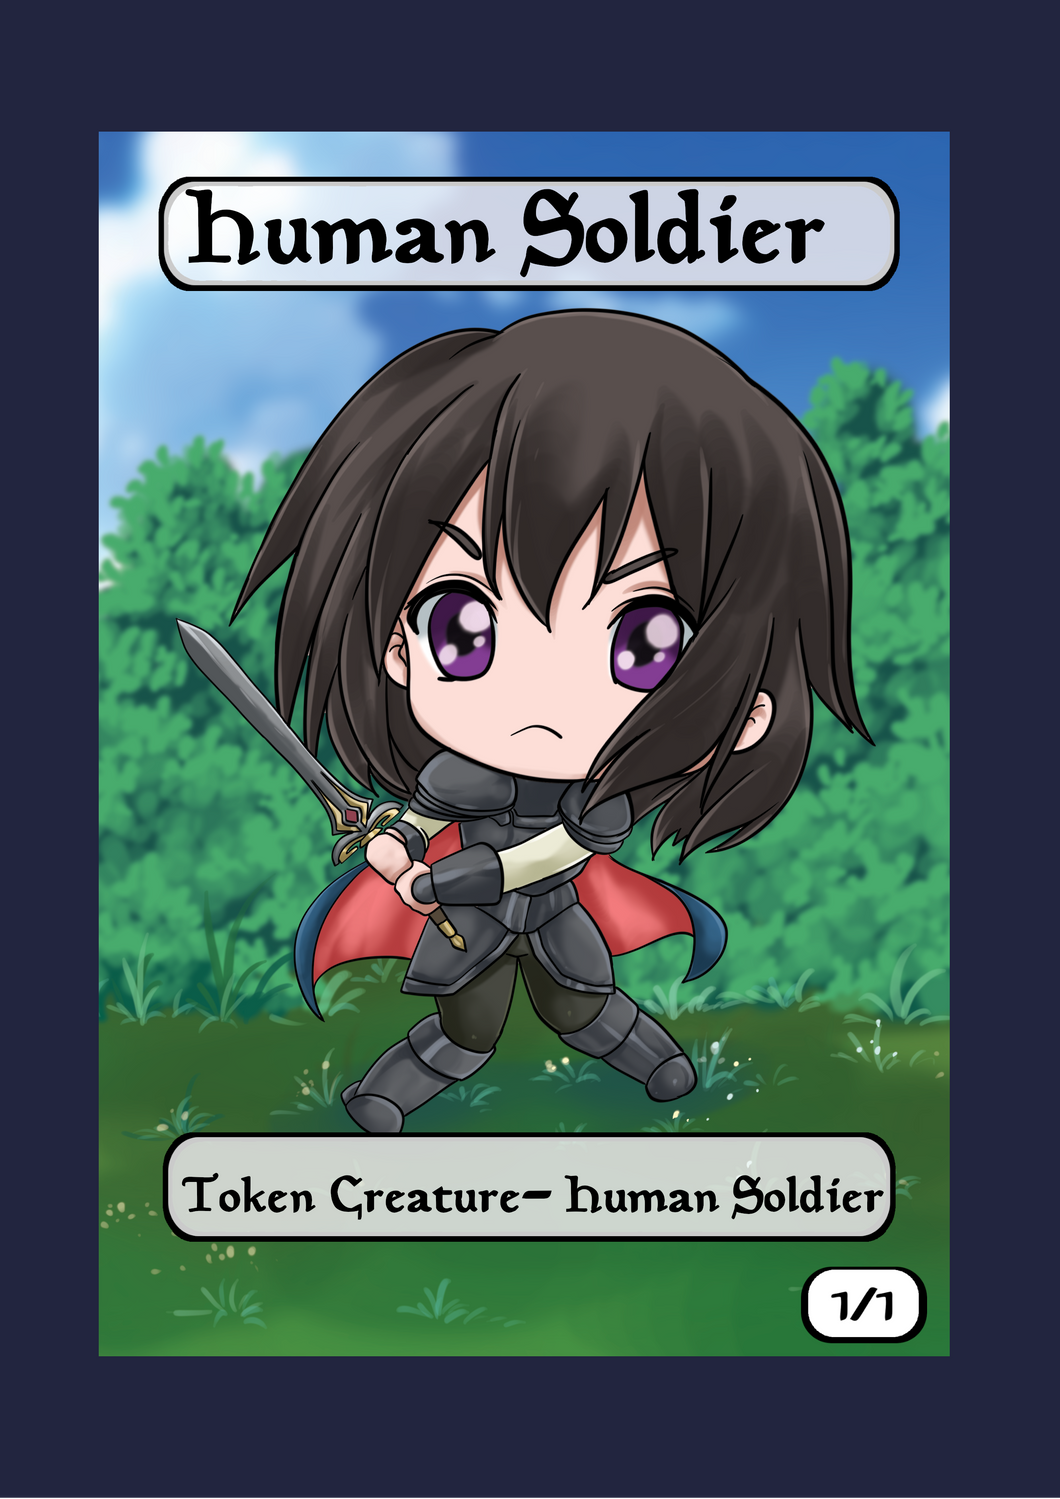 Human Soldier 1/1 Token